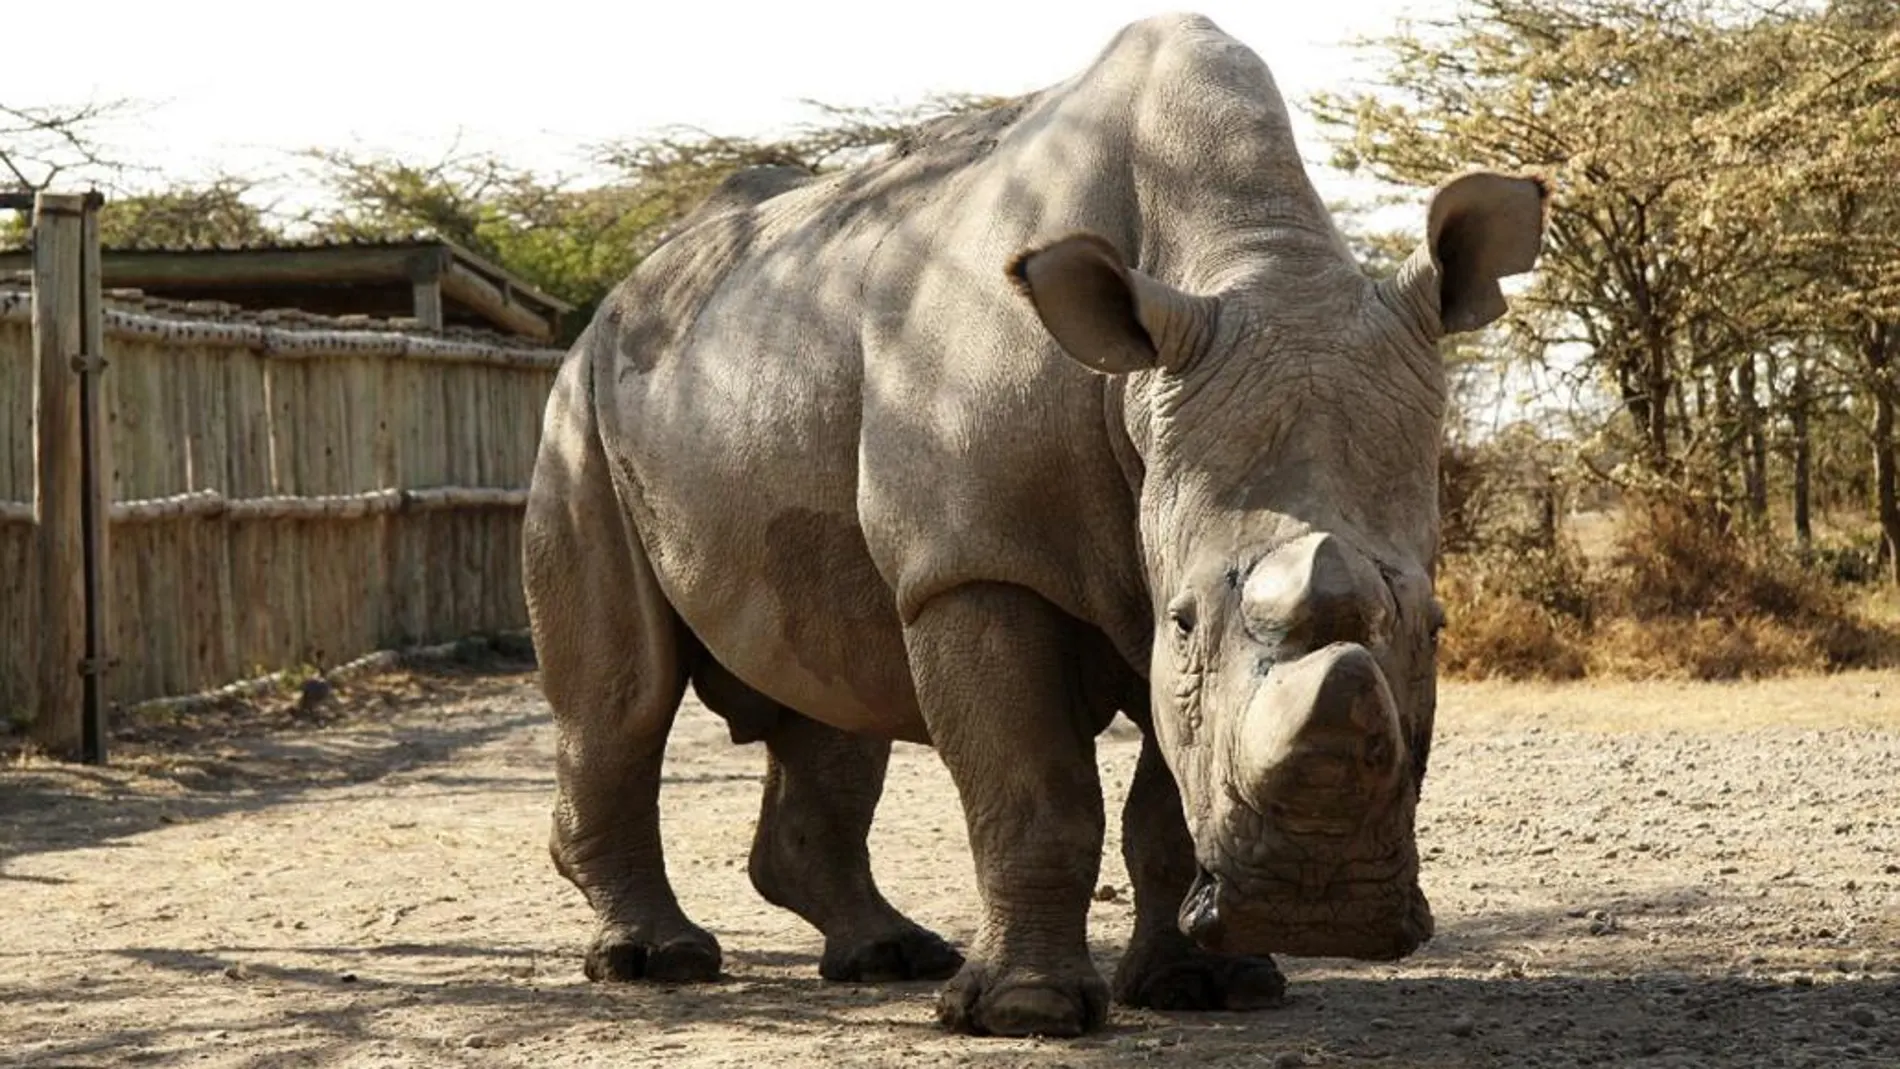 Fotografía facilitada por el zoo de Dvur Králové del rinoceronte blanco del norte bautizado Sudán que la última esperanza de supervivencia para esta subespecie.